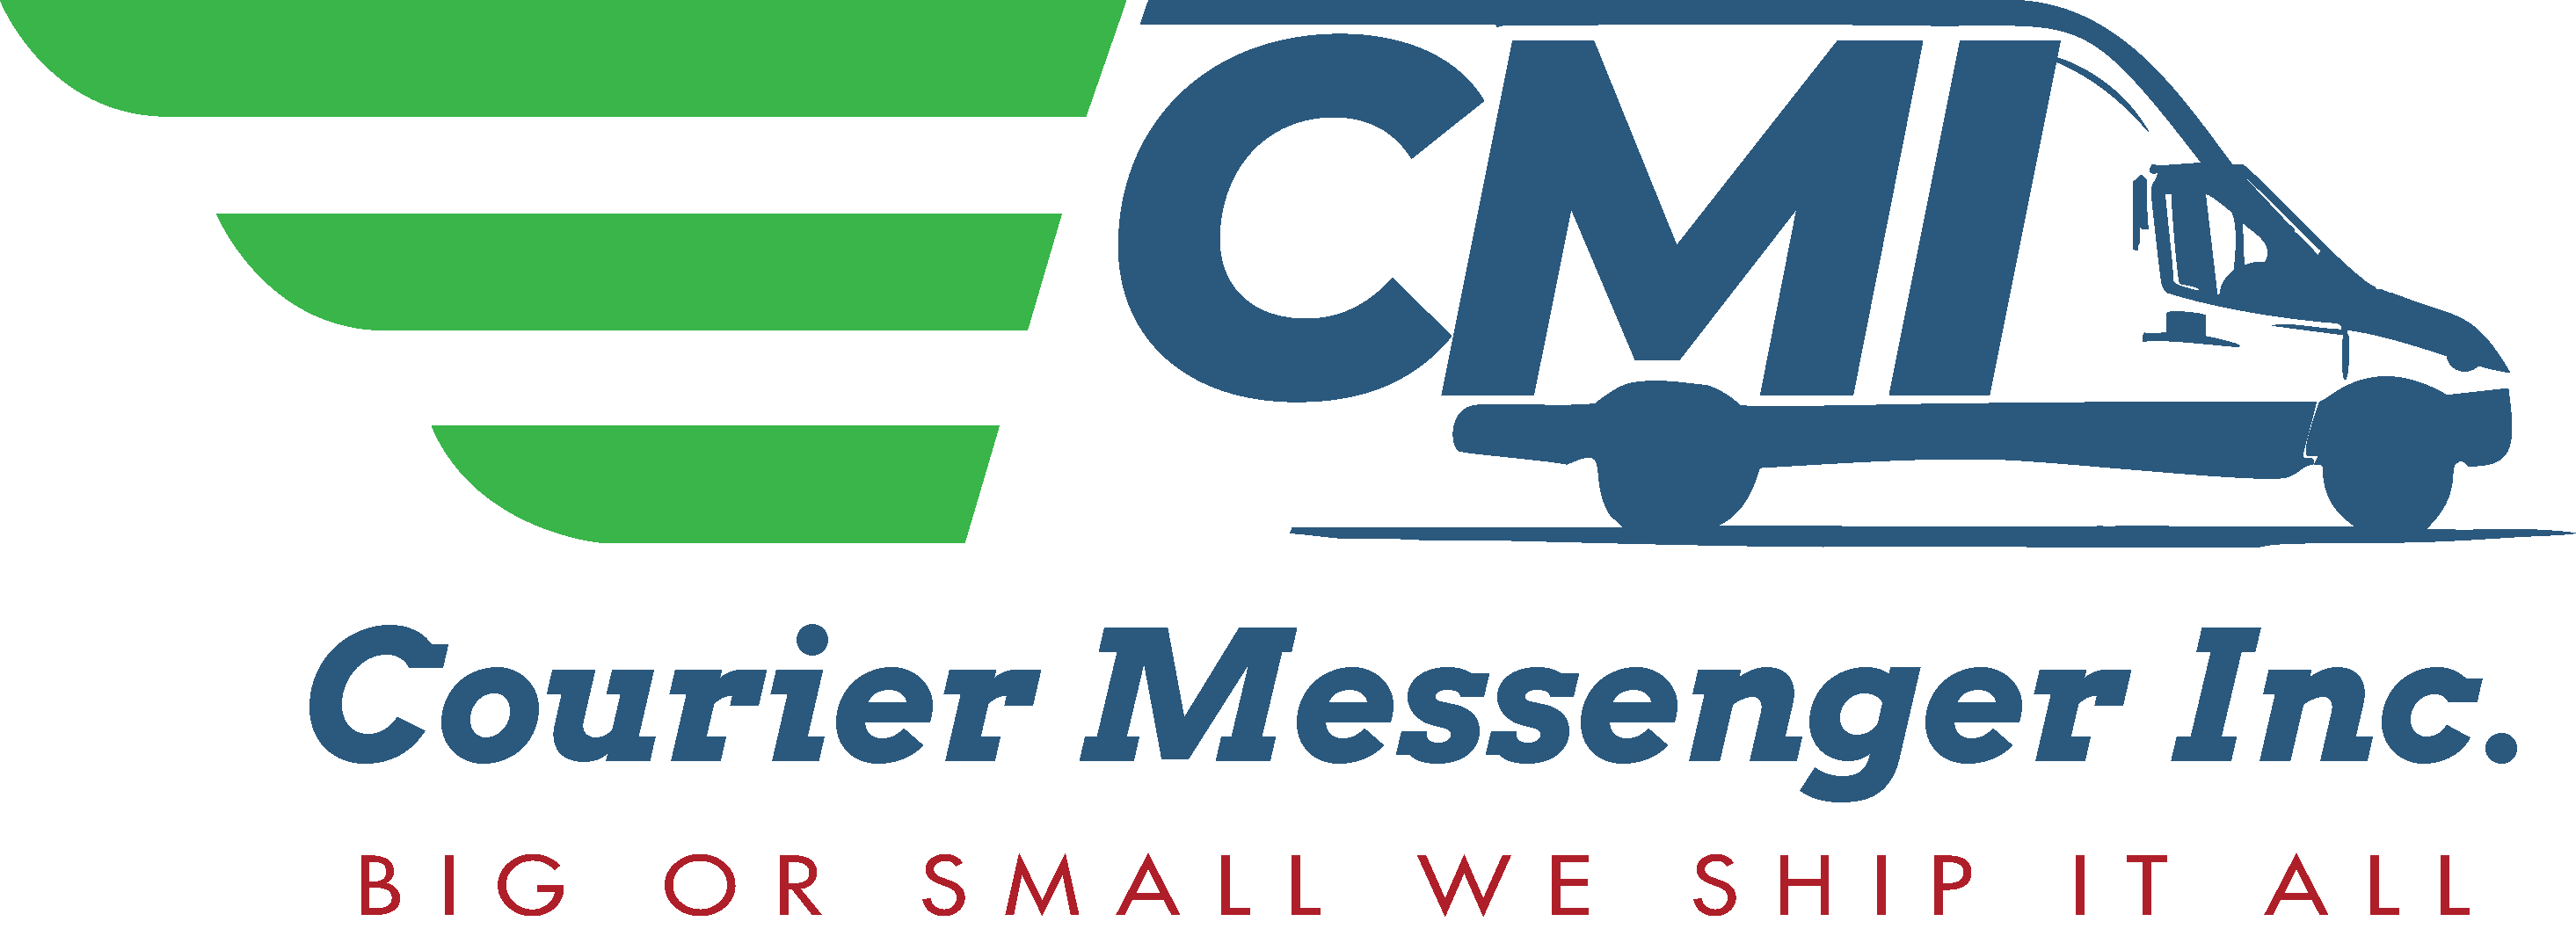 CMI Courier-Messenger, Inc.